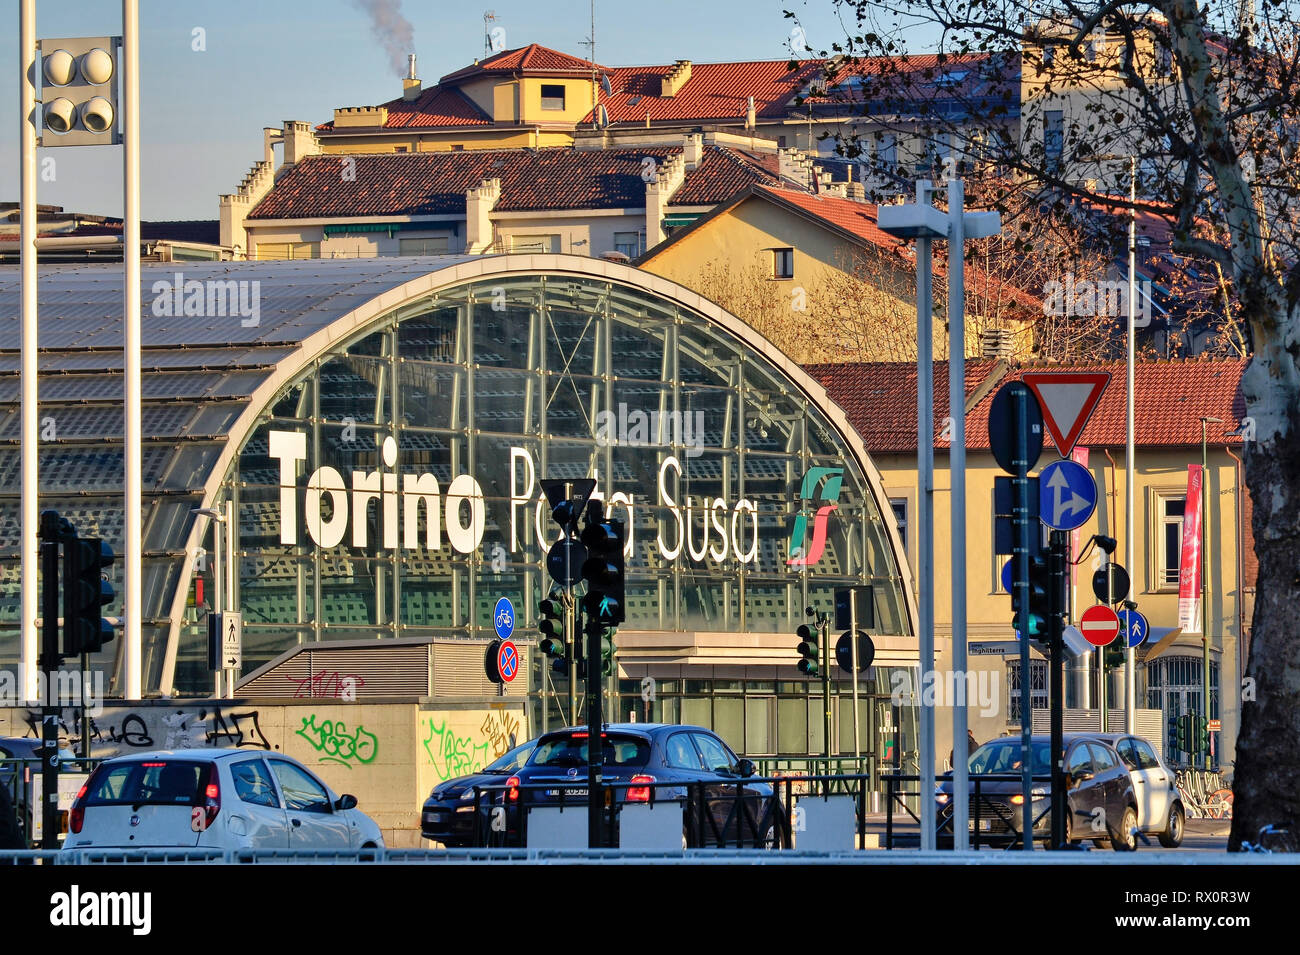 Torino Piemonte, Italia. Gennaio 2019. Dalla stazione ferroviaria di Torino Porta Susa, moderna e futuristica struttura in vetro e acciaio. Foto Stock